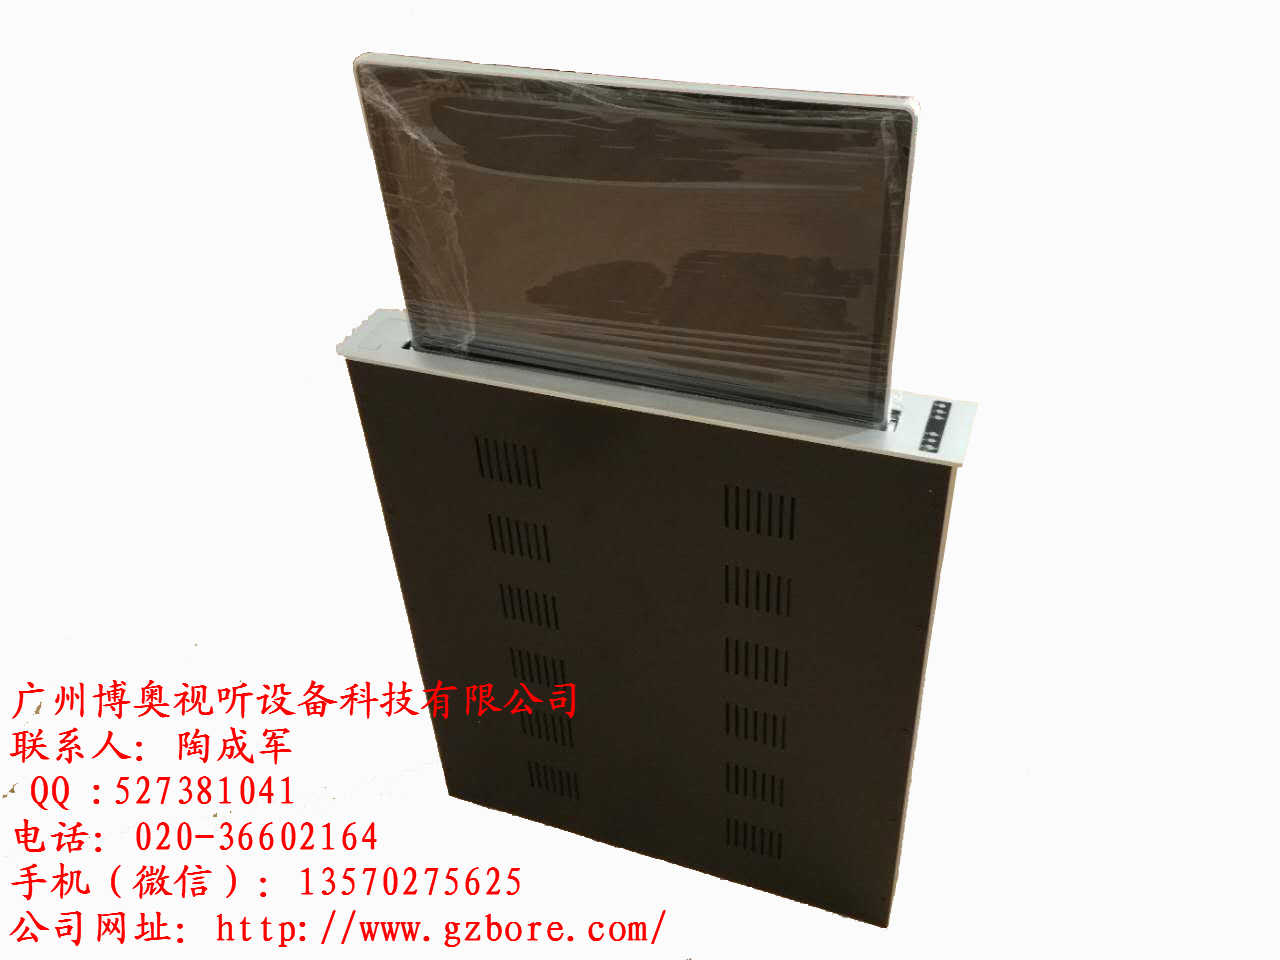 广州市显示器升降器厂家2019新款显示器升降器 超薄一体含屏电动显示器升降器厂家直销